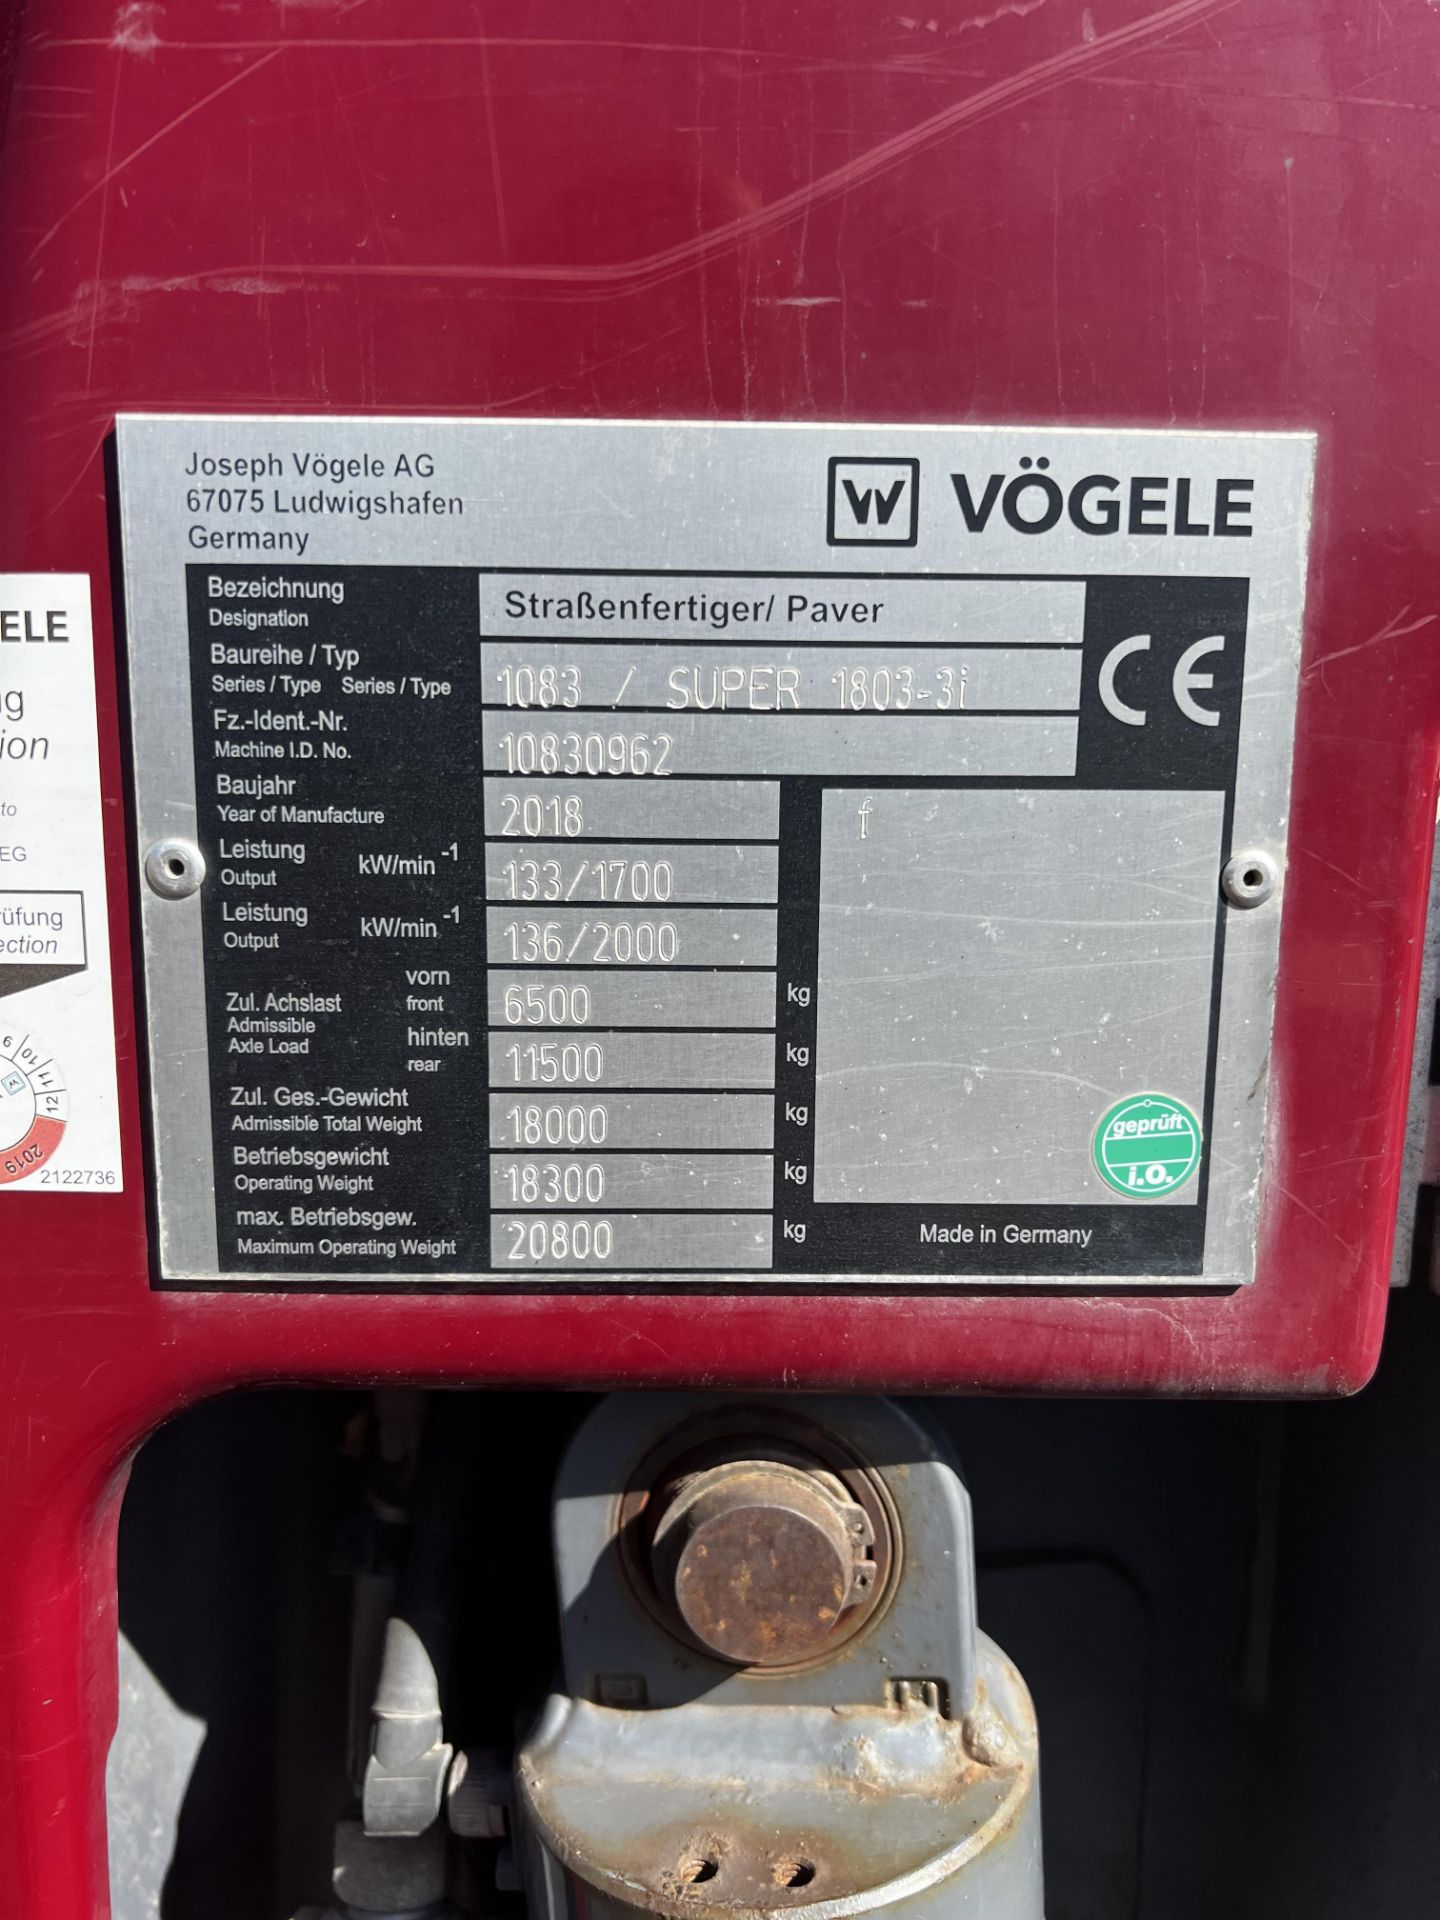 VOGELE Model SUPER 1803-3i Wheeled Paver year 2018 2,500 hours use - Image 2 of 13